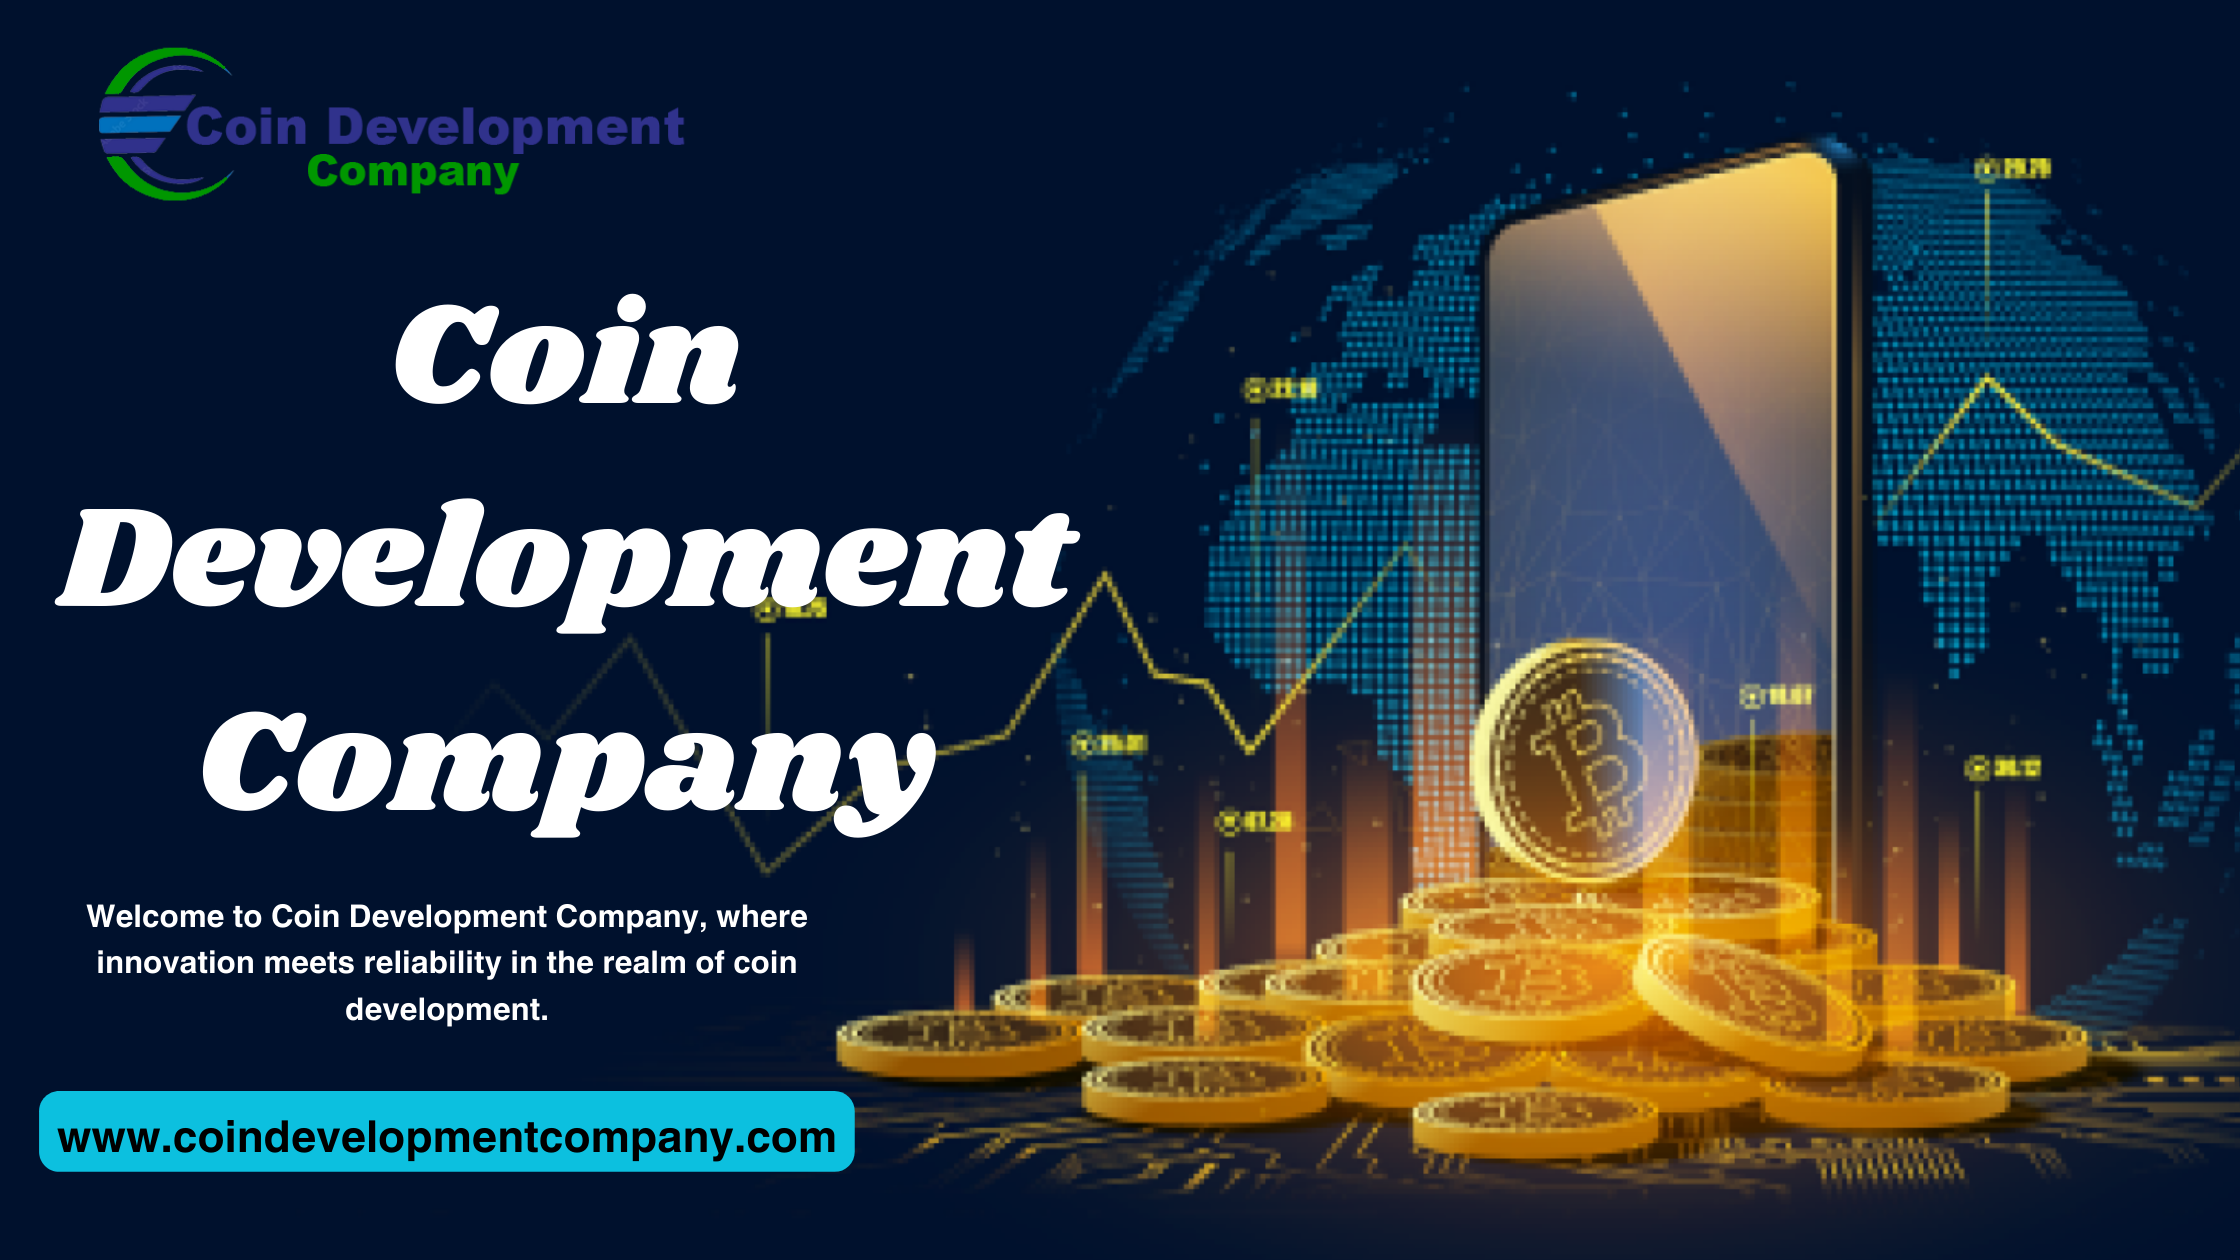 Coin Development Company